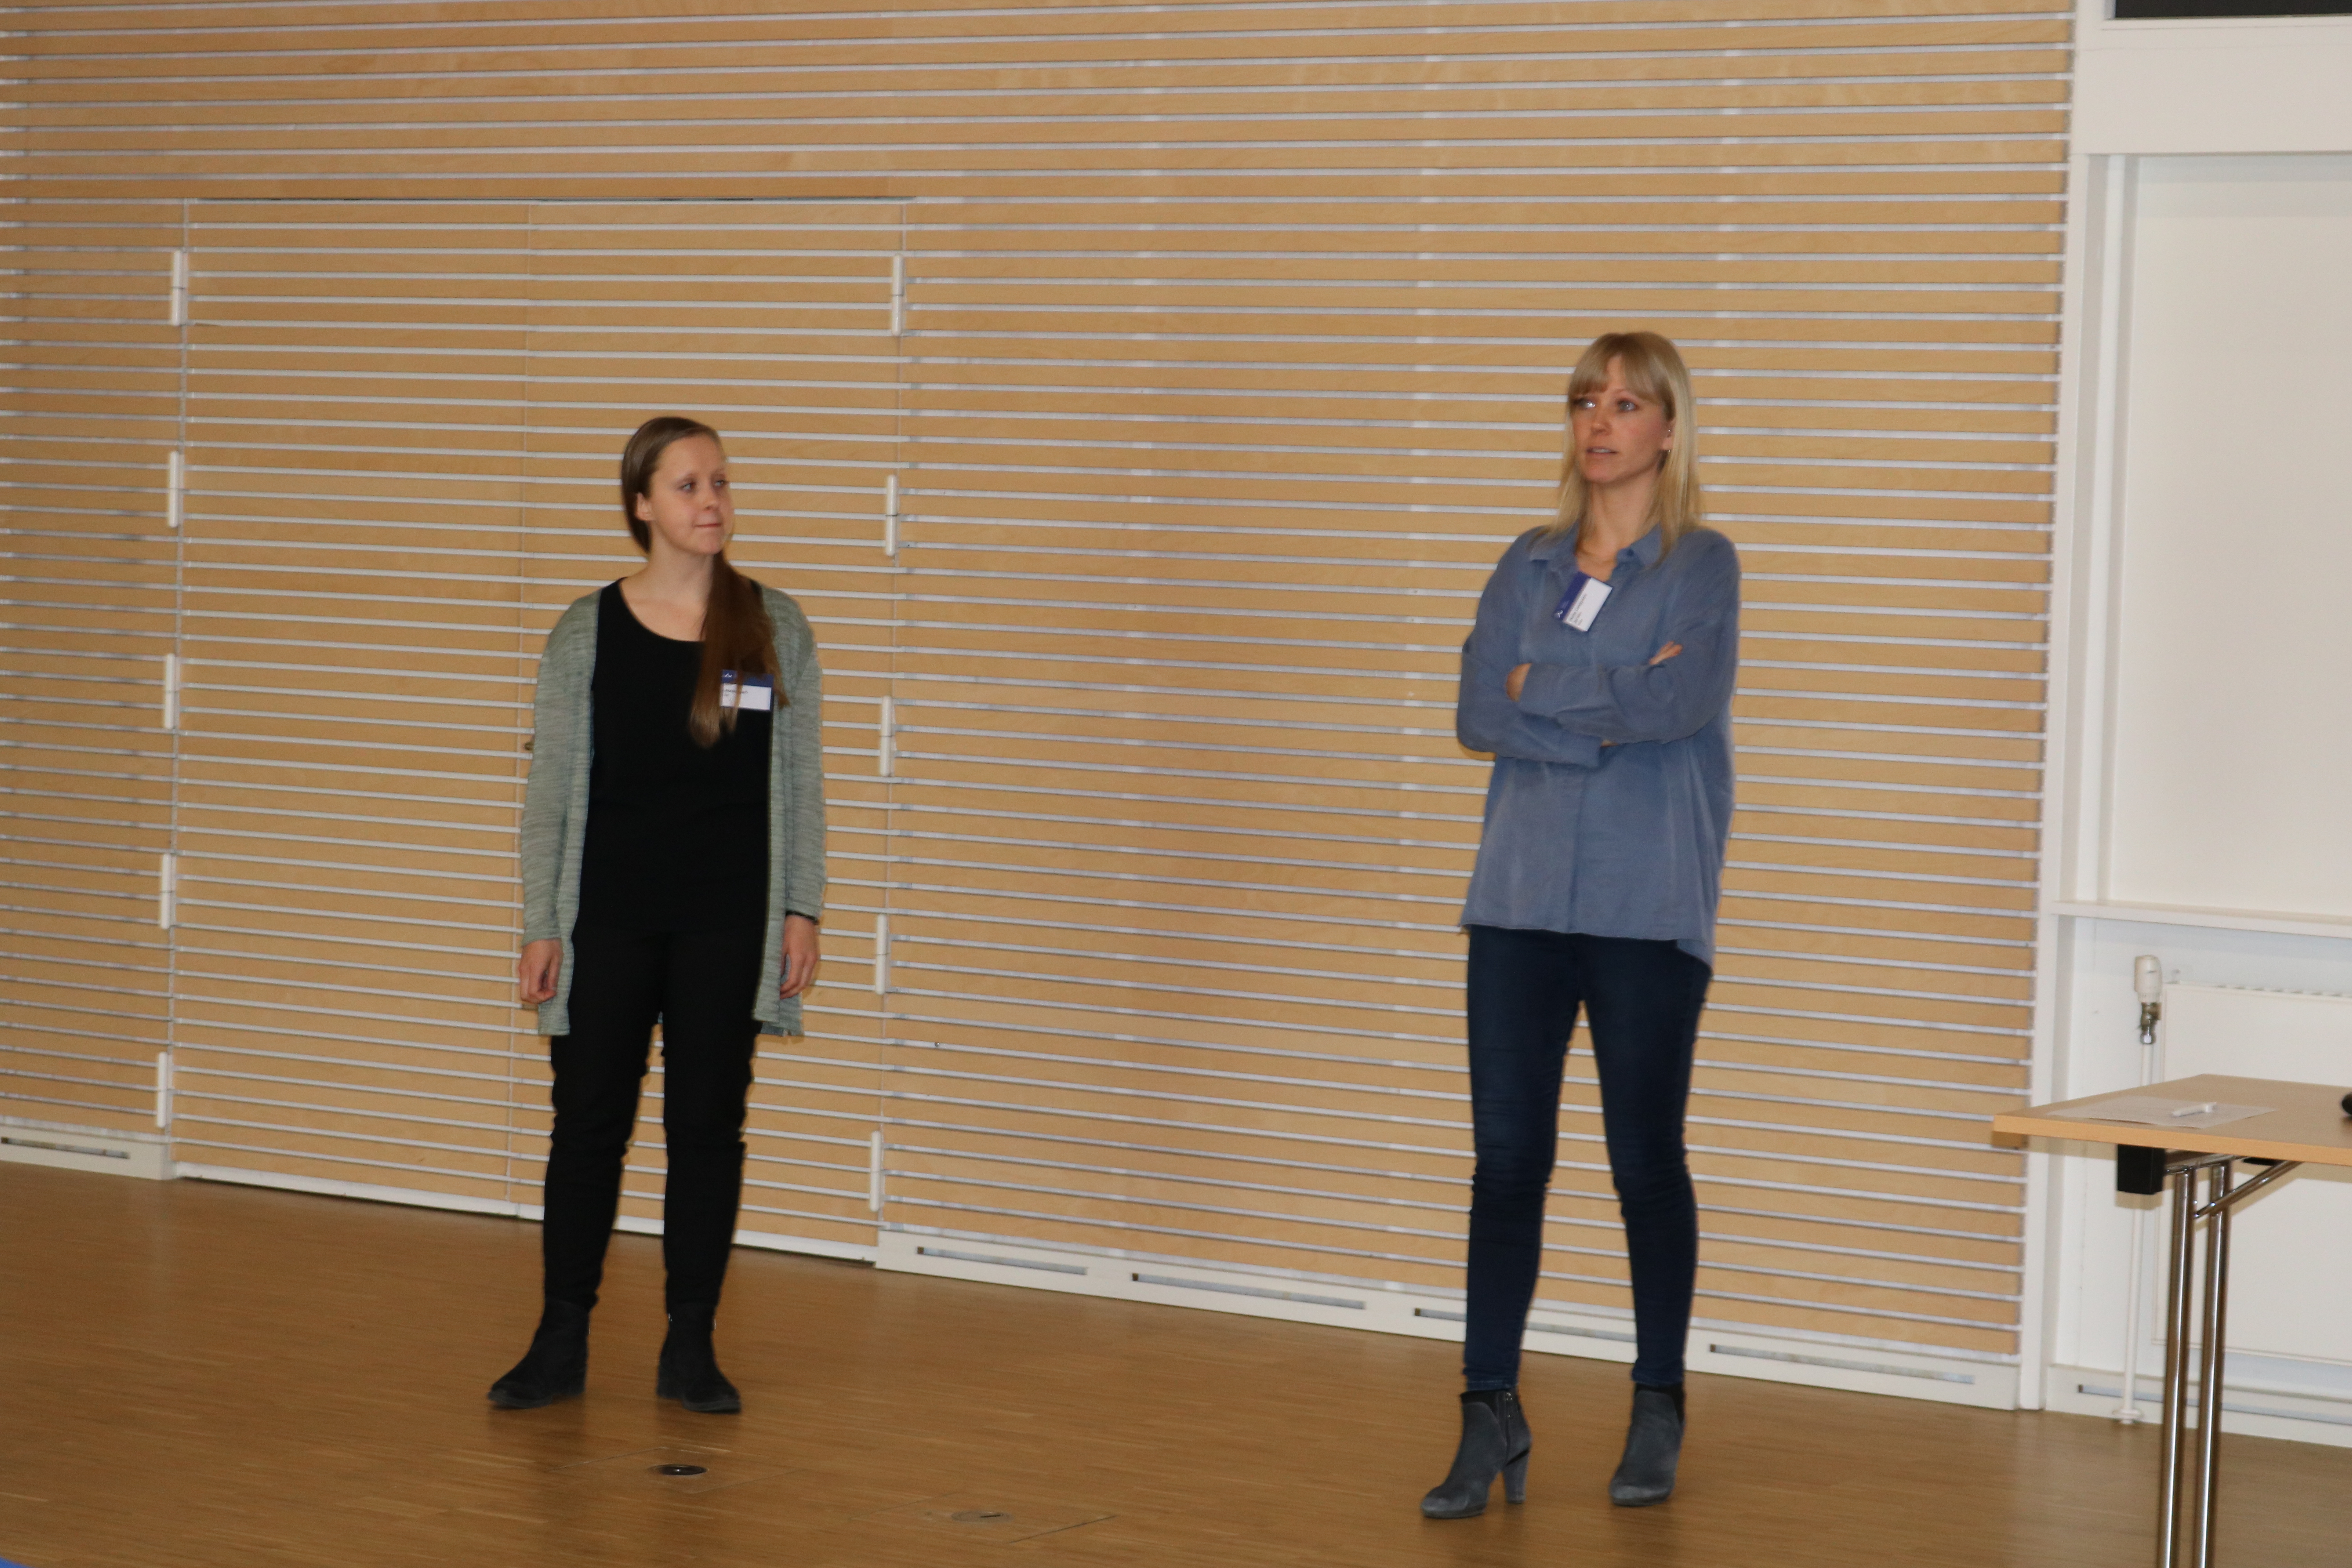 De to alumner Monica Bach fra DLG samt Mette Langgaard Jensen fra SEGES, som holdt oplæg om deres karriereveje. Foto: Linda S. Sørensen.